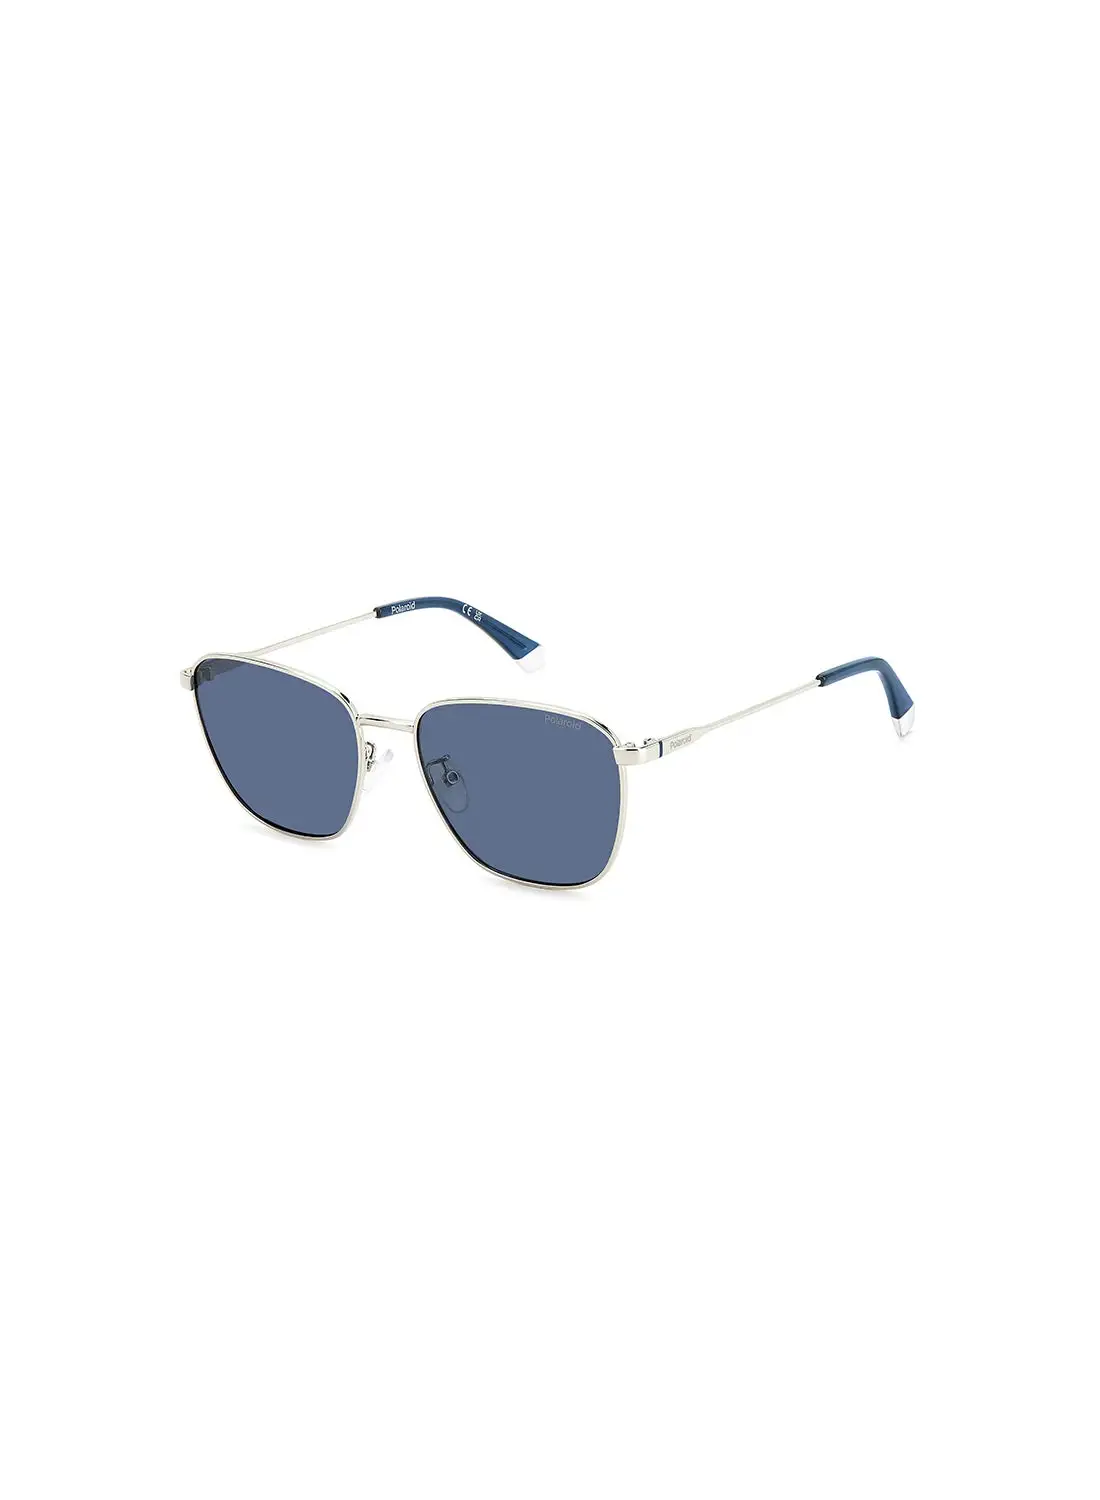 Polaroid Men's Polarized Rectangular Sunglasses - Pld 4159/G/S/X Grey Millimeter - Lens Size: 56 Mm